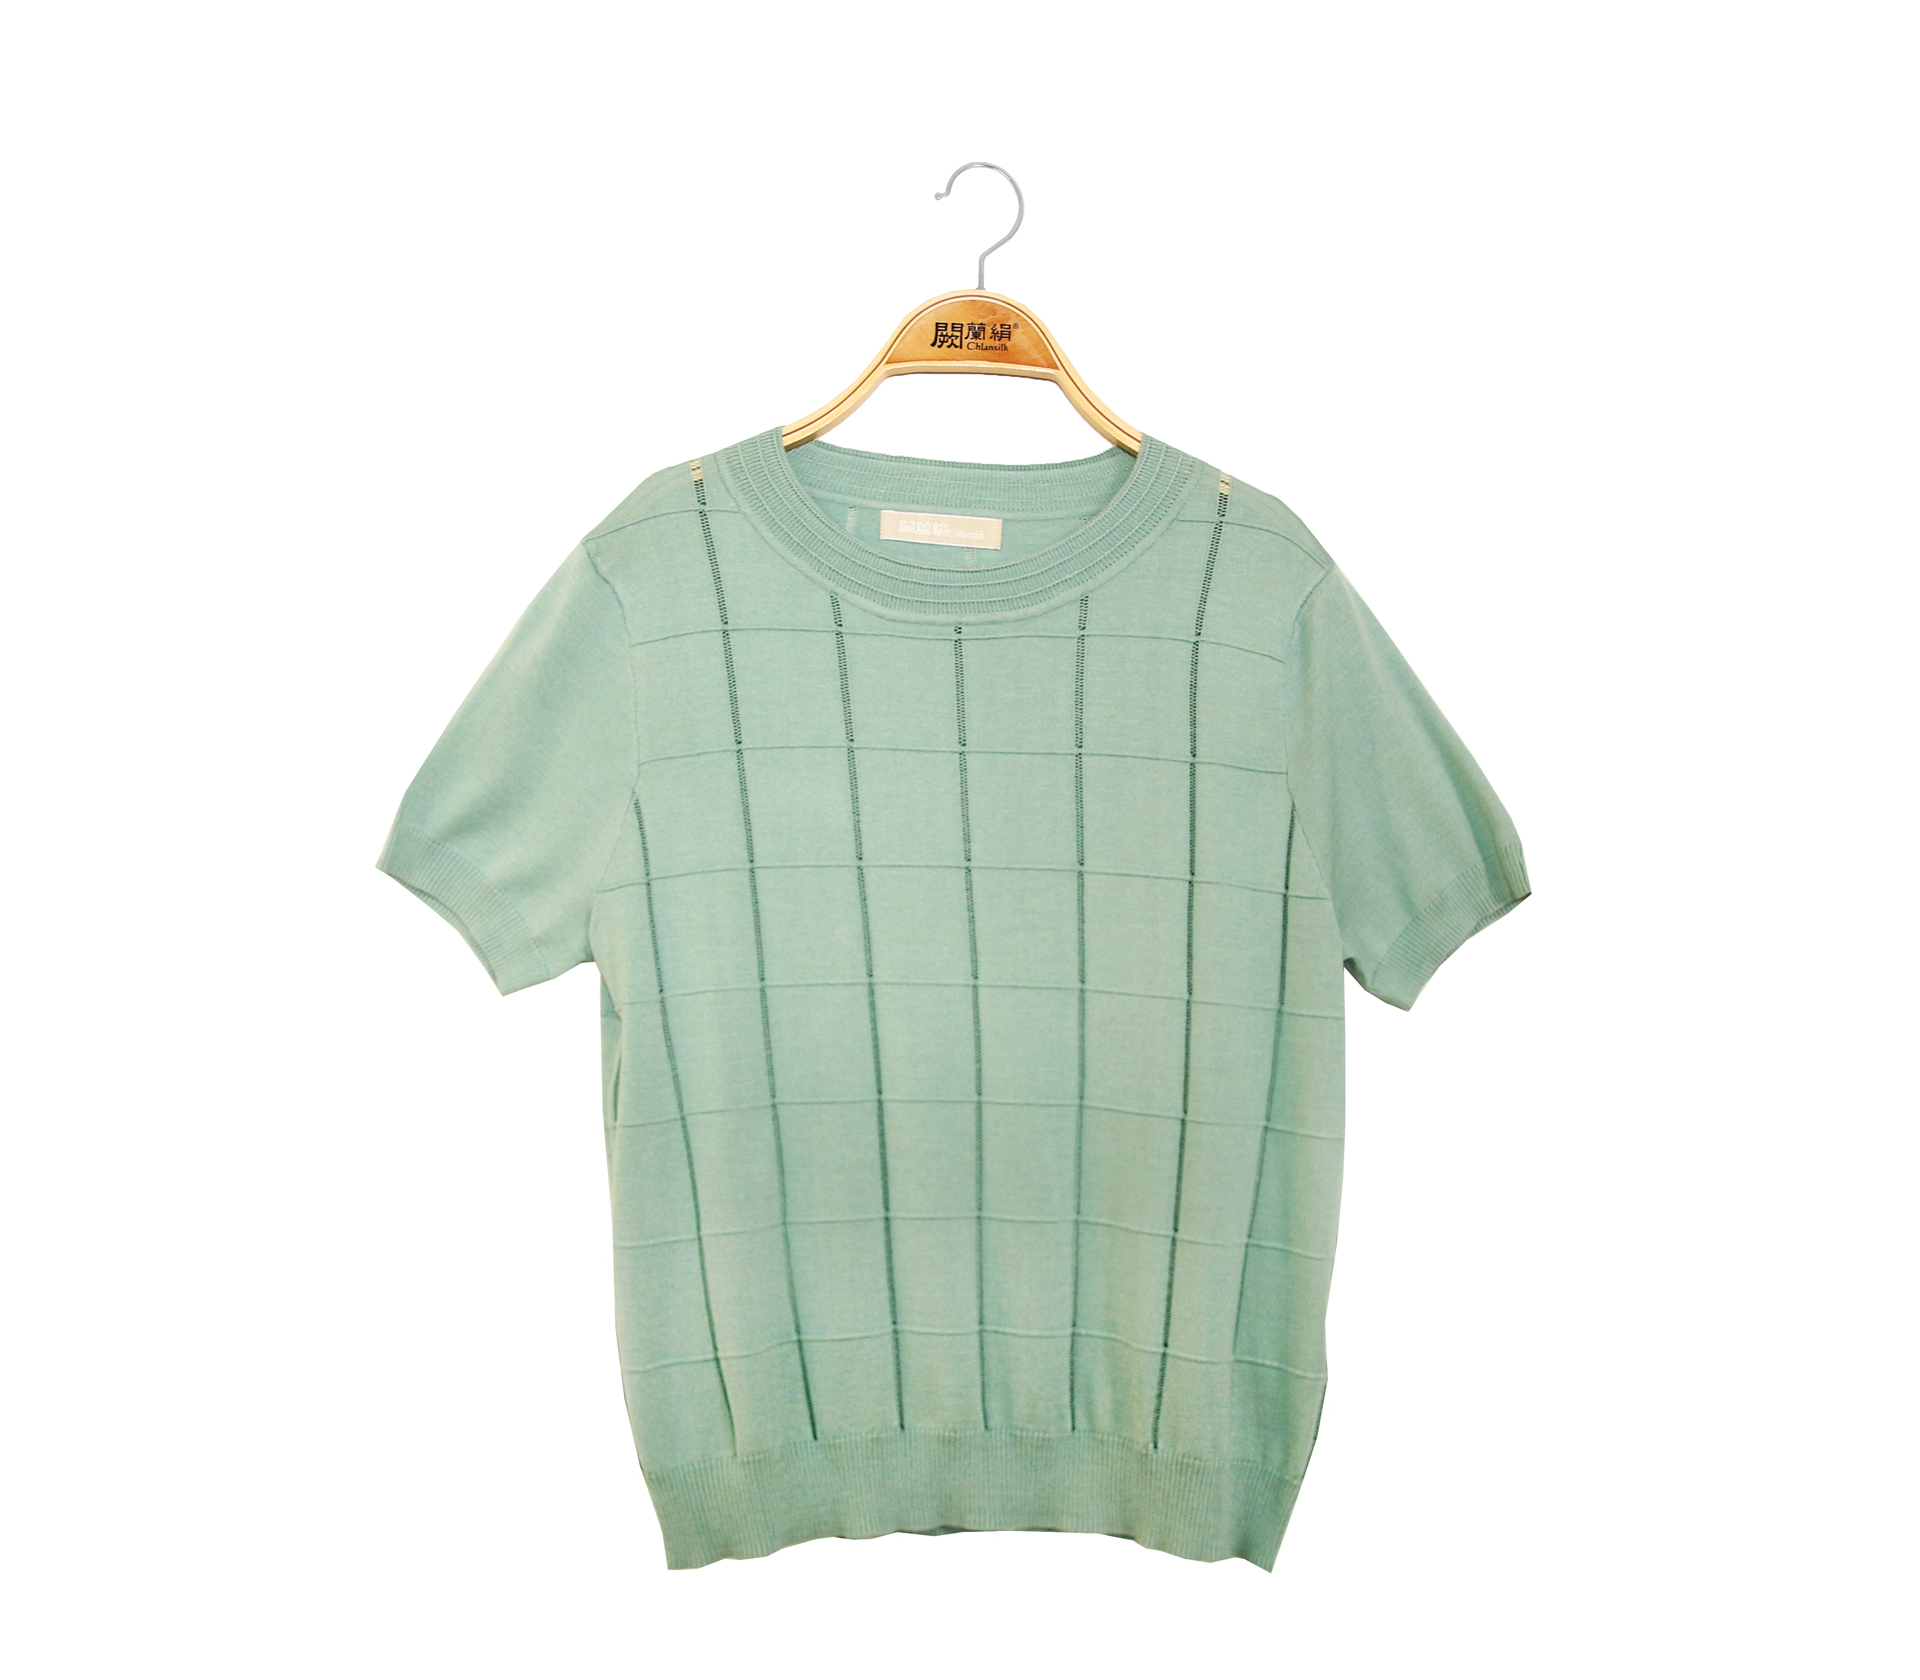 闕蘭絹方格簍空造型針織蠶絲上衣 - 綠色 - 62123